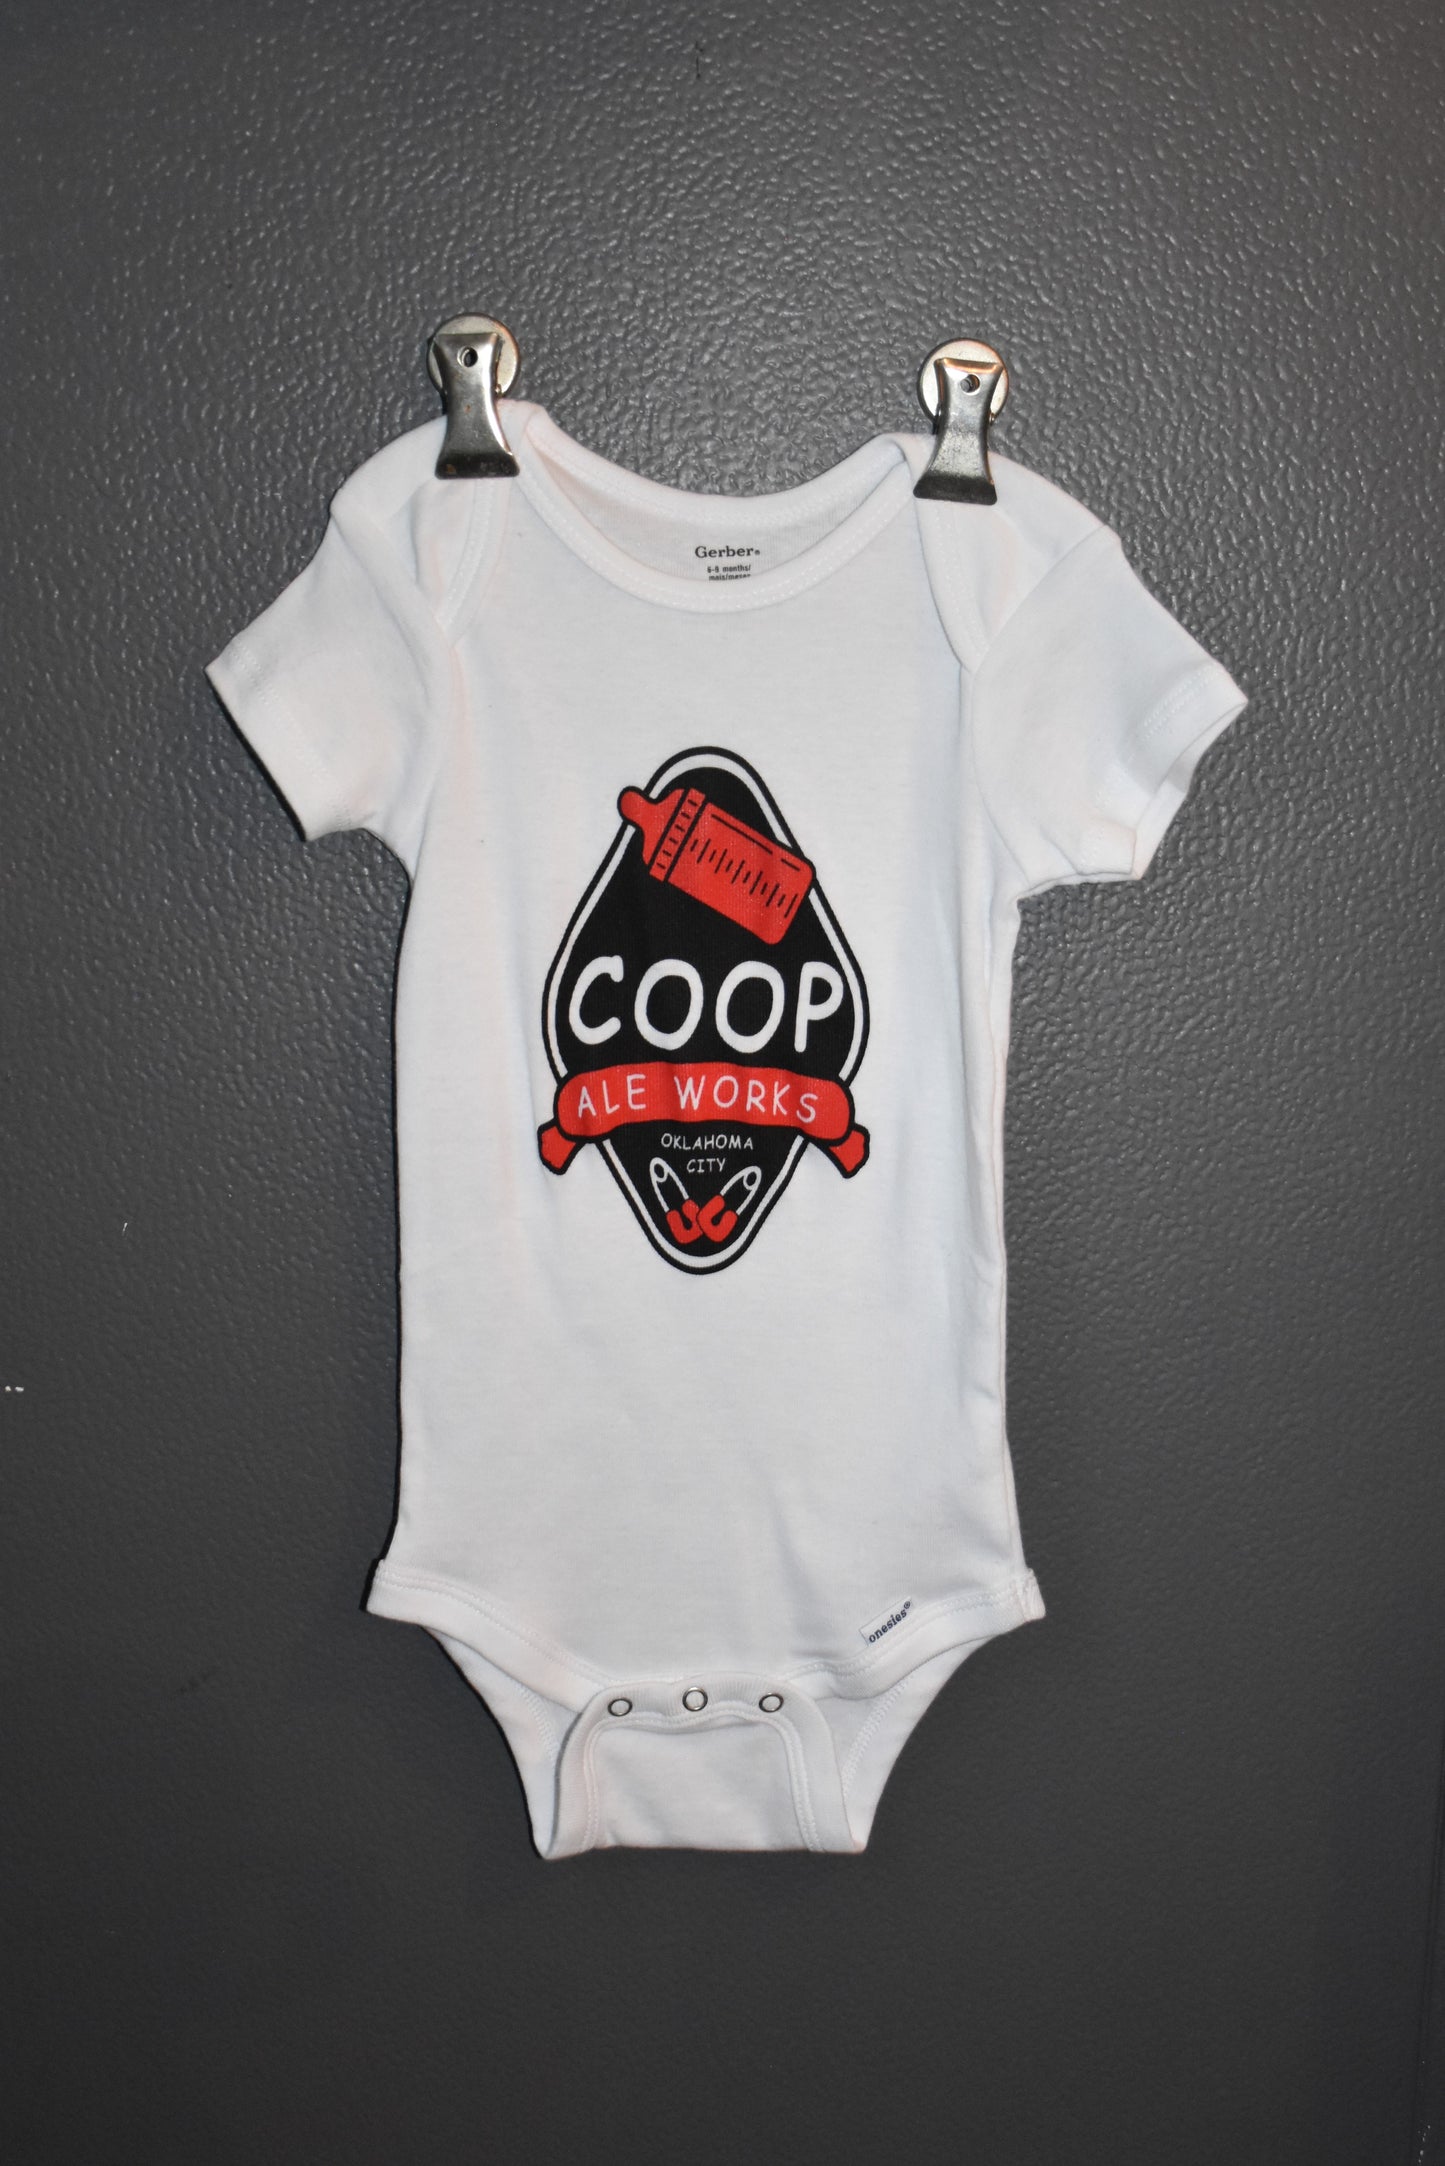 COOP Baby Onesie